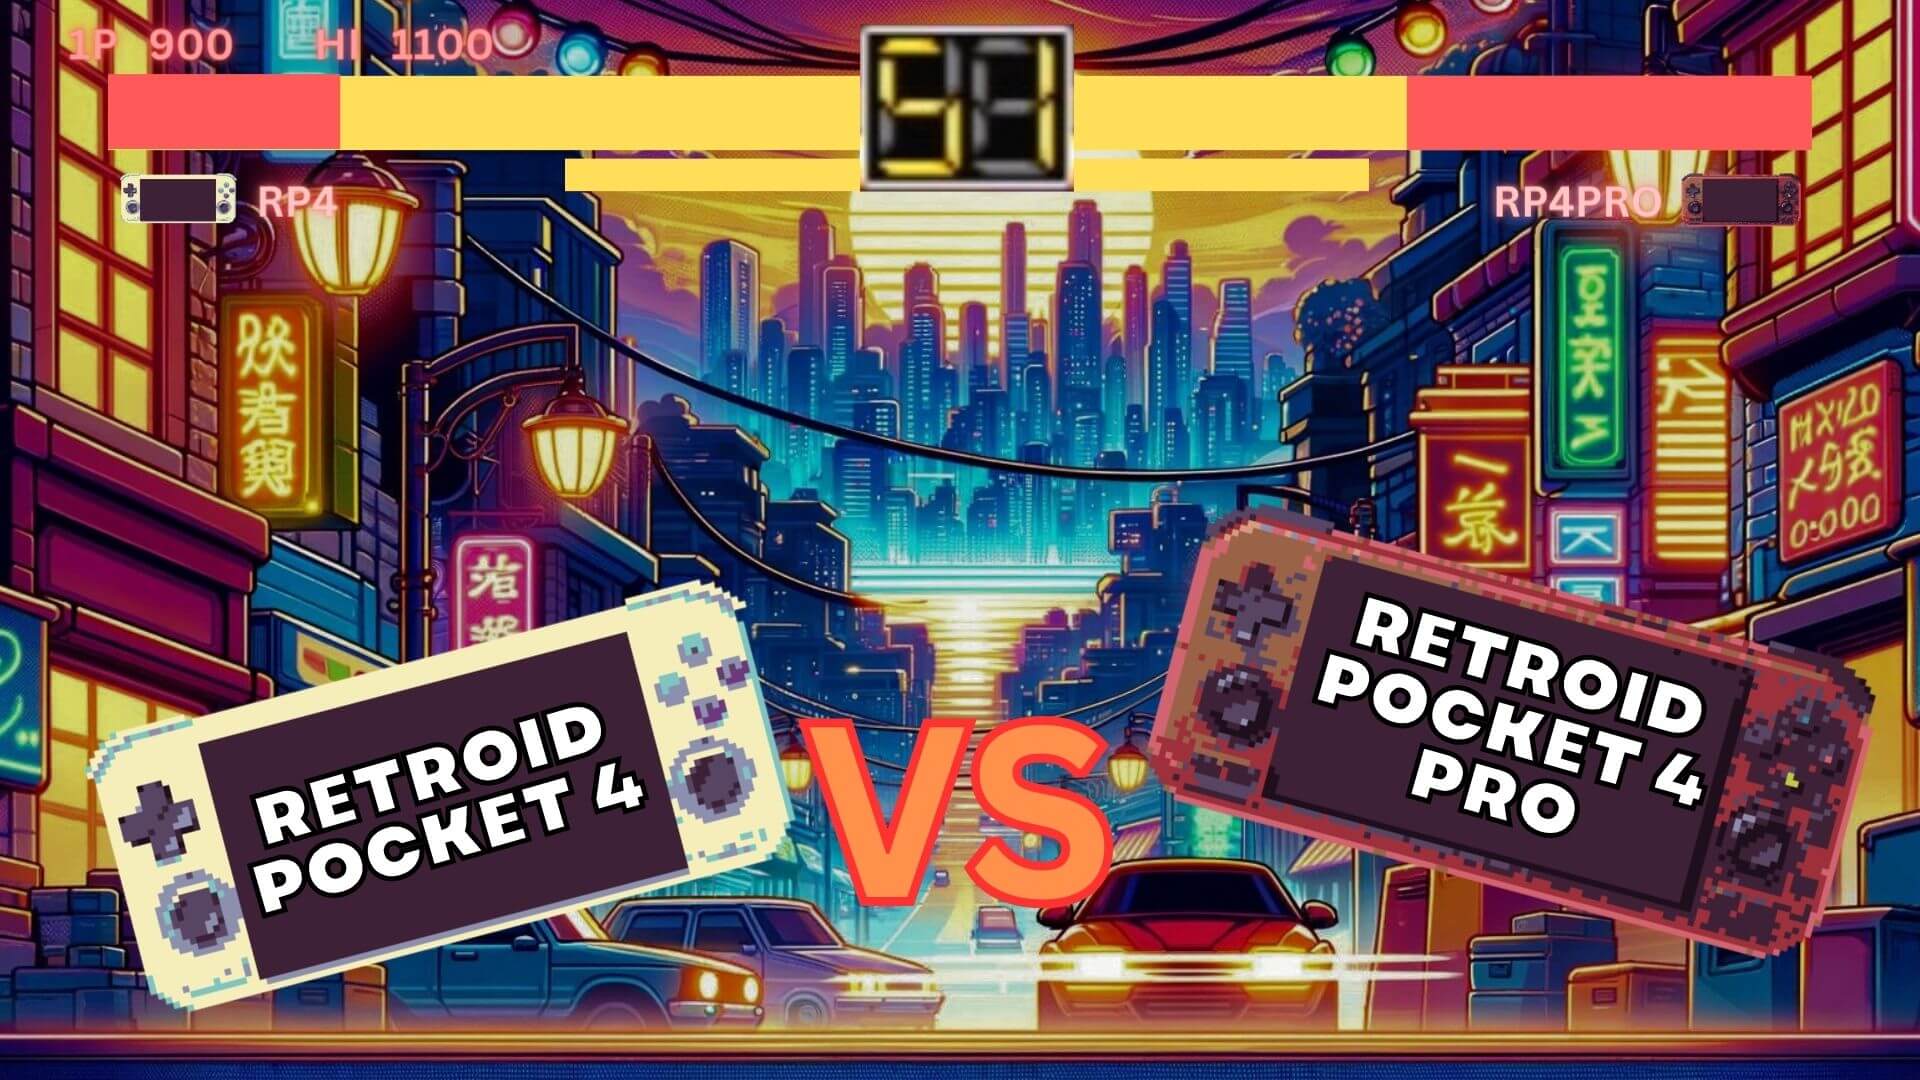 Retroid Pocket 4 vs Retroid Pocket  4 PRO com vídeo - Qual tem o melhor preço em relação ao desempenho?